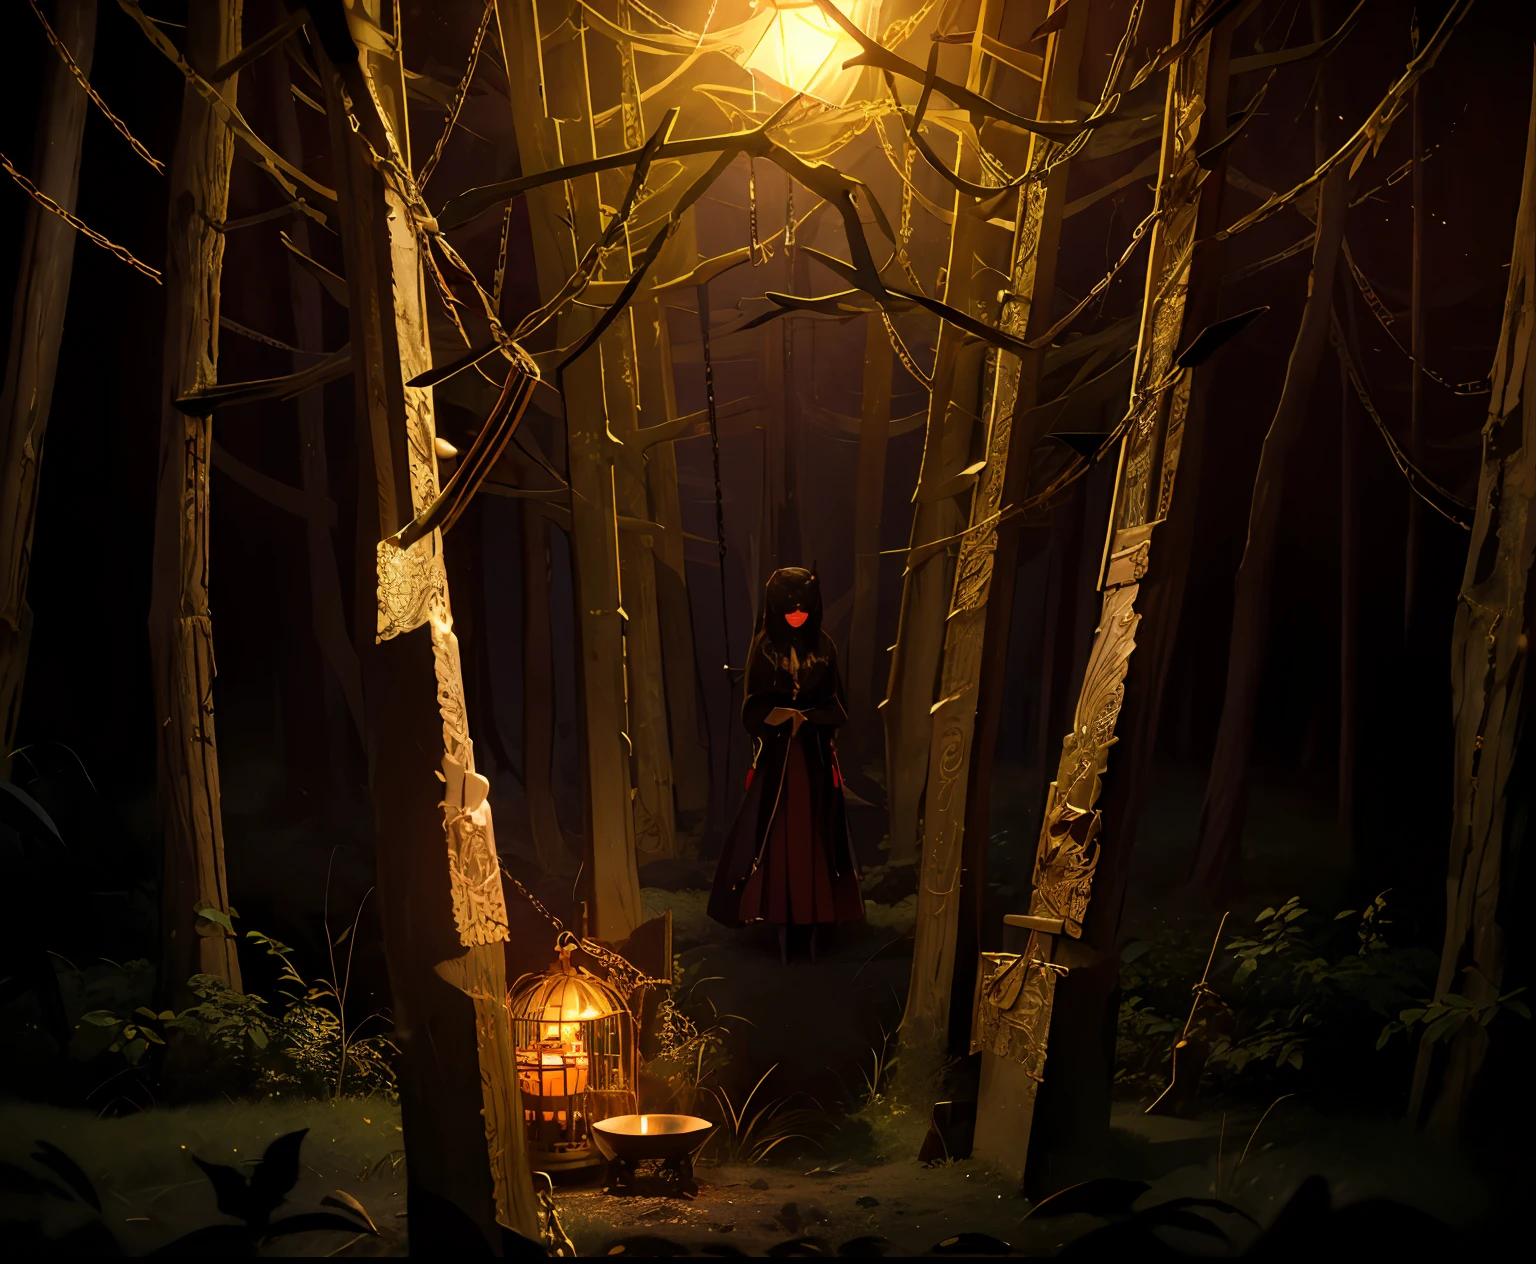 ภาพอาราเฟดของบุคคลที่ยืนอยู่ในป่าพร้อมไฟสีแดง, ยืนอยู่ในป่าอันมืดมิดที่เต็มไปด้วยฝันร้าย, เด็กหญิง 1 คนสวมหน้ากากตาบอด, ปีศาจ, ยืนอยู่ในป่าที่น่ากลัว, ตอนกลางคืน, (ถือกรงทองคำประดับด้วยลวดลายสีทอง), (ล้อมรอบด้วยโซ่)